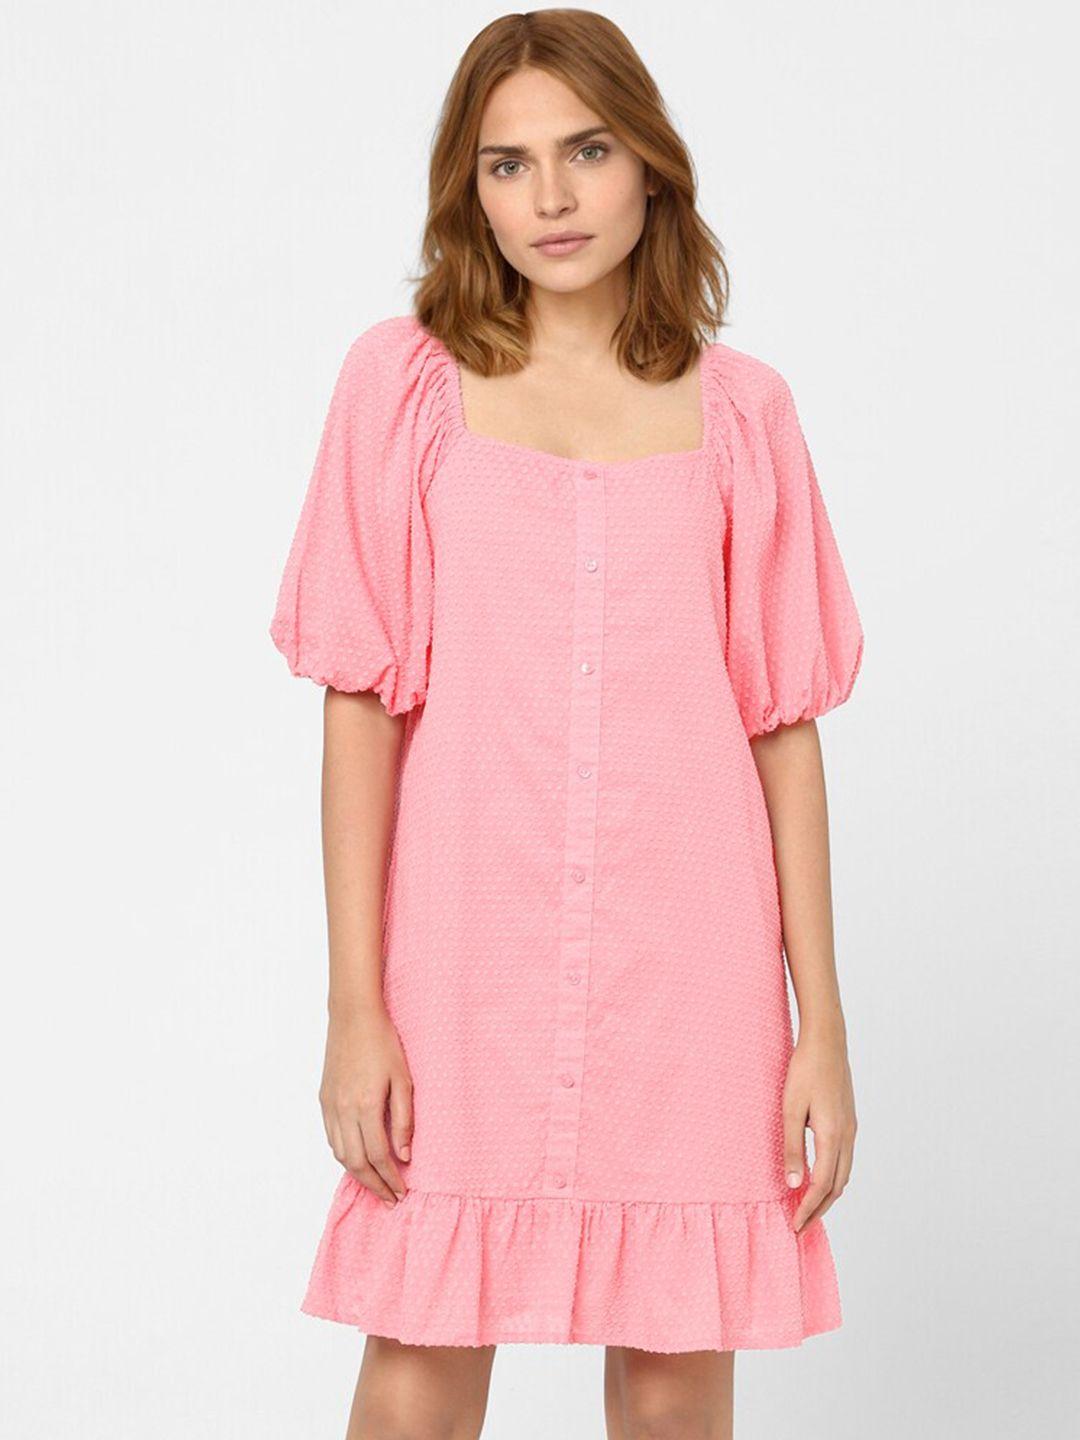 vero moda pink & light pink drop-waist dress